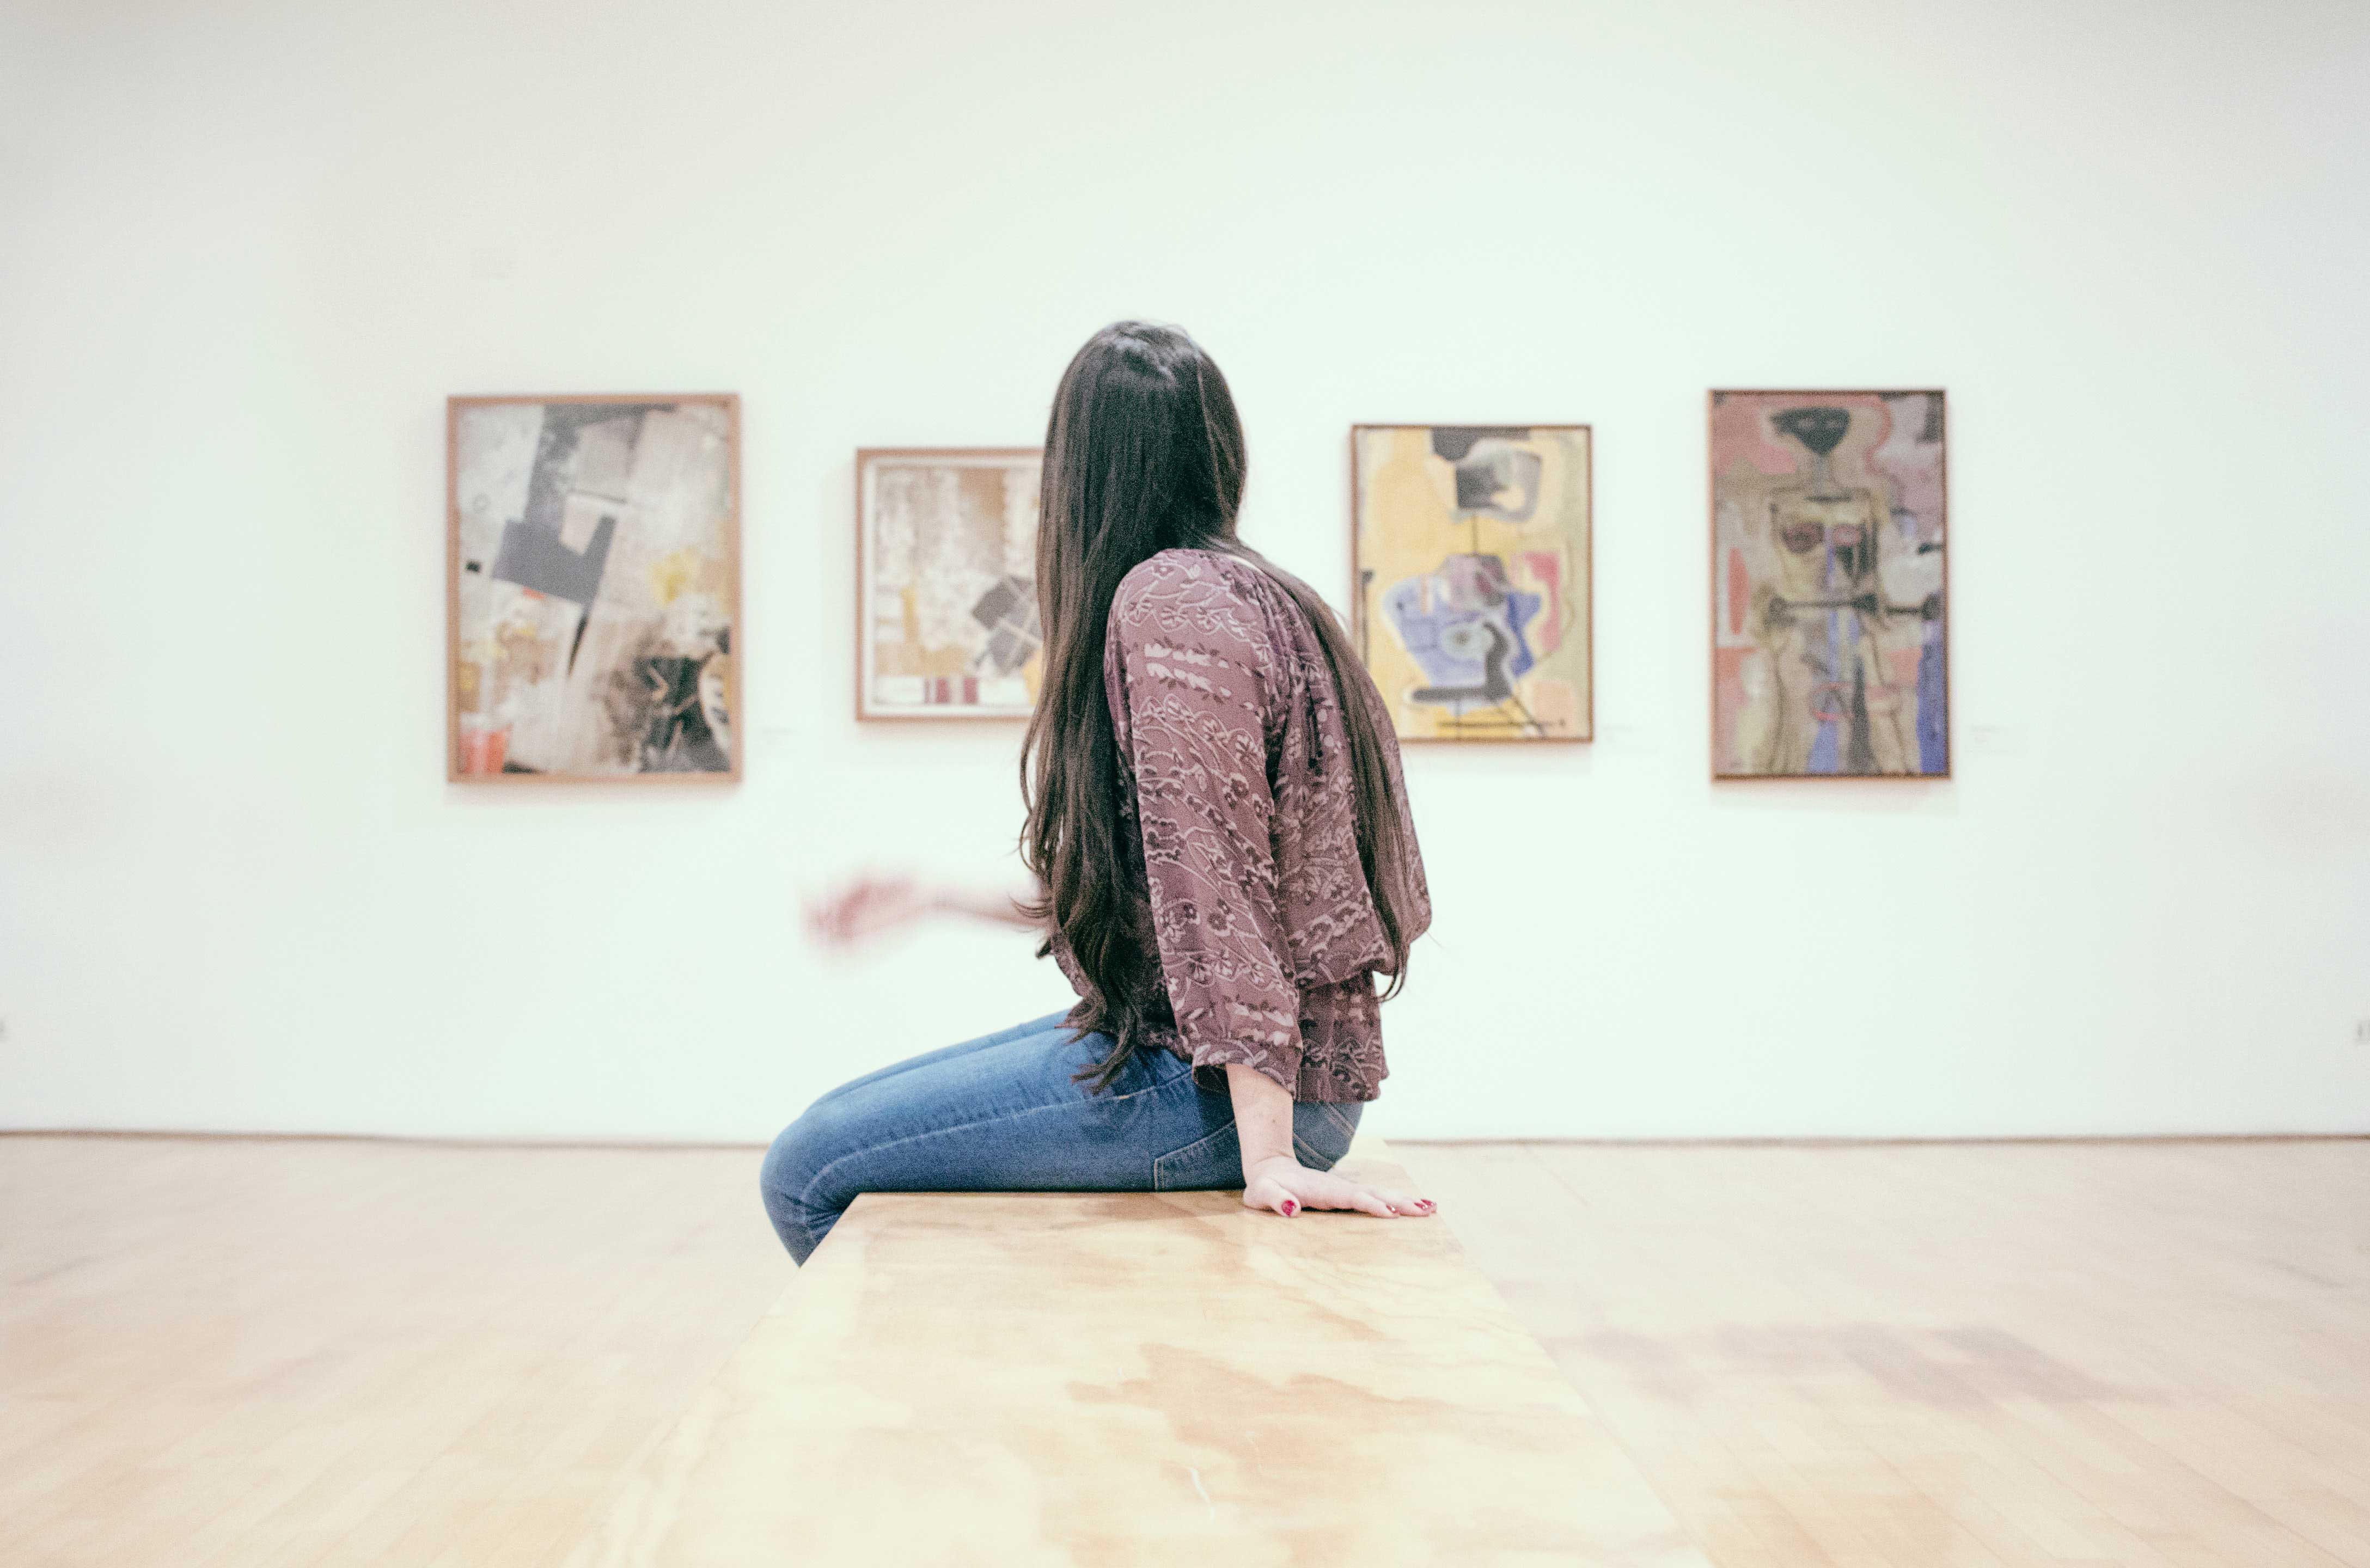 Une amateur d’art observant des œuvres dans un lieu d’exposition